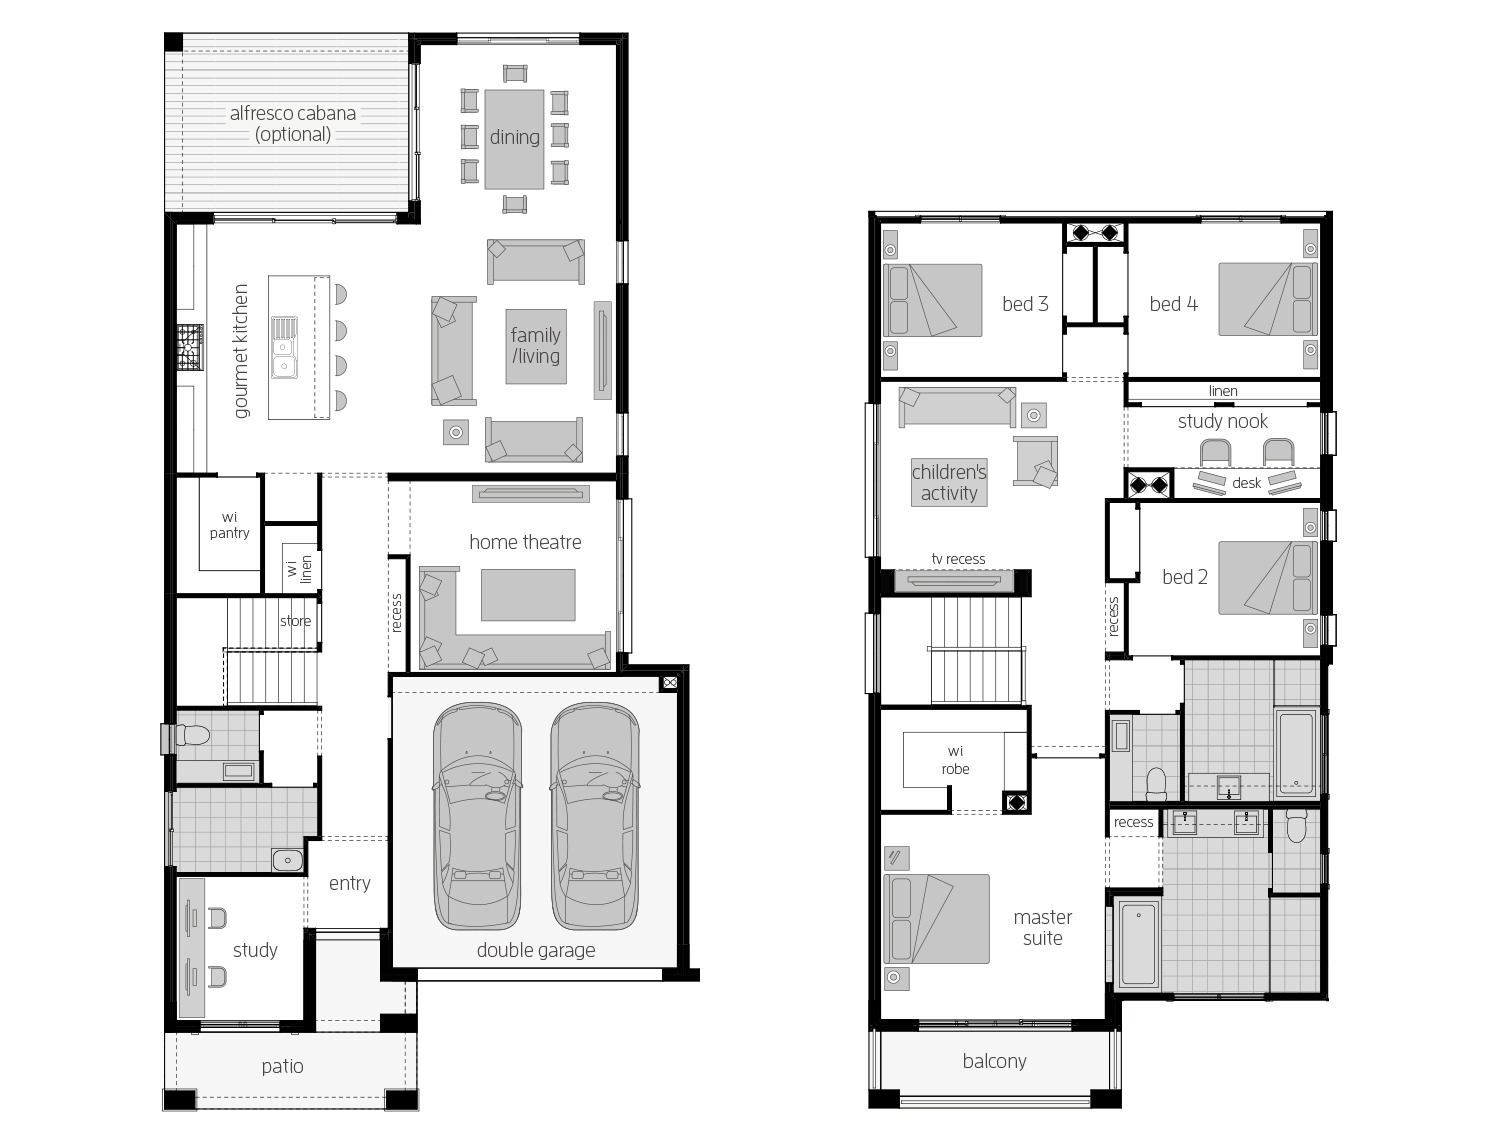 St. Clair 34 One- Two Storey Floor Plan- McDonald Jones